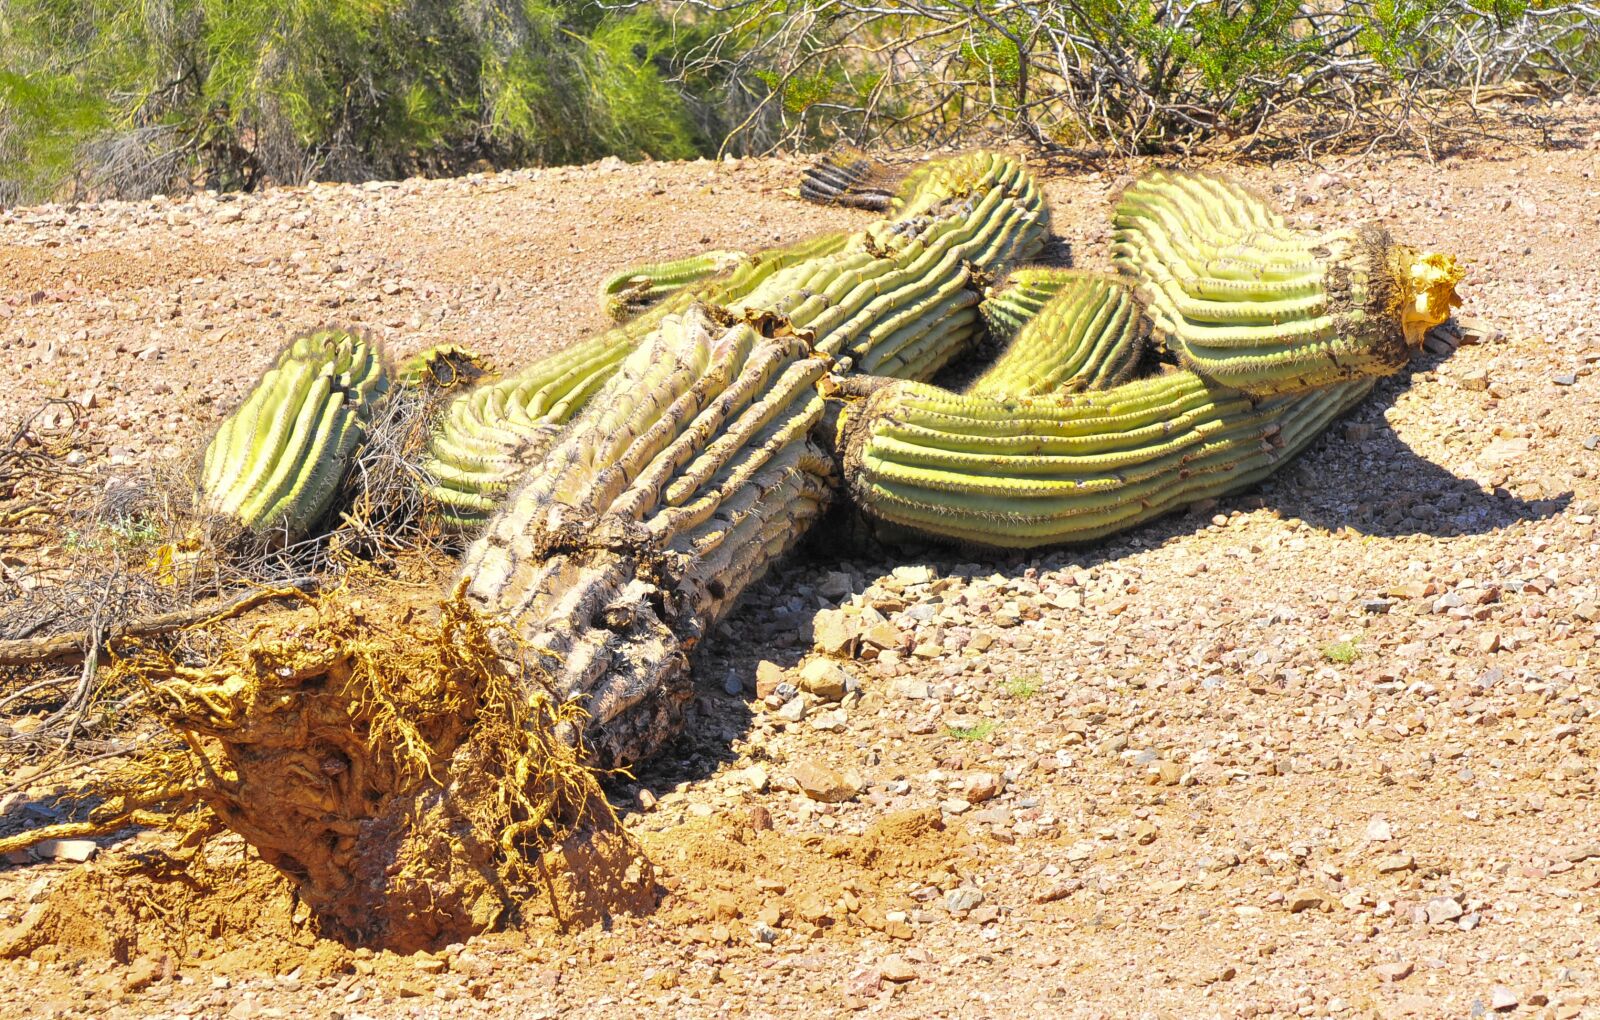 Nikon D300 sample photo. Desert, cactus, nature photography